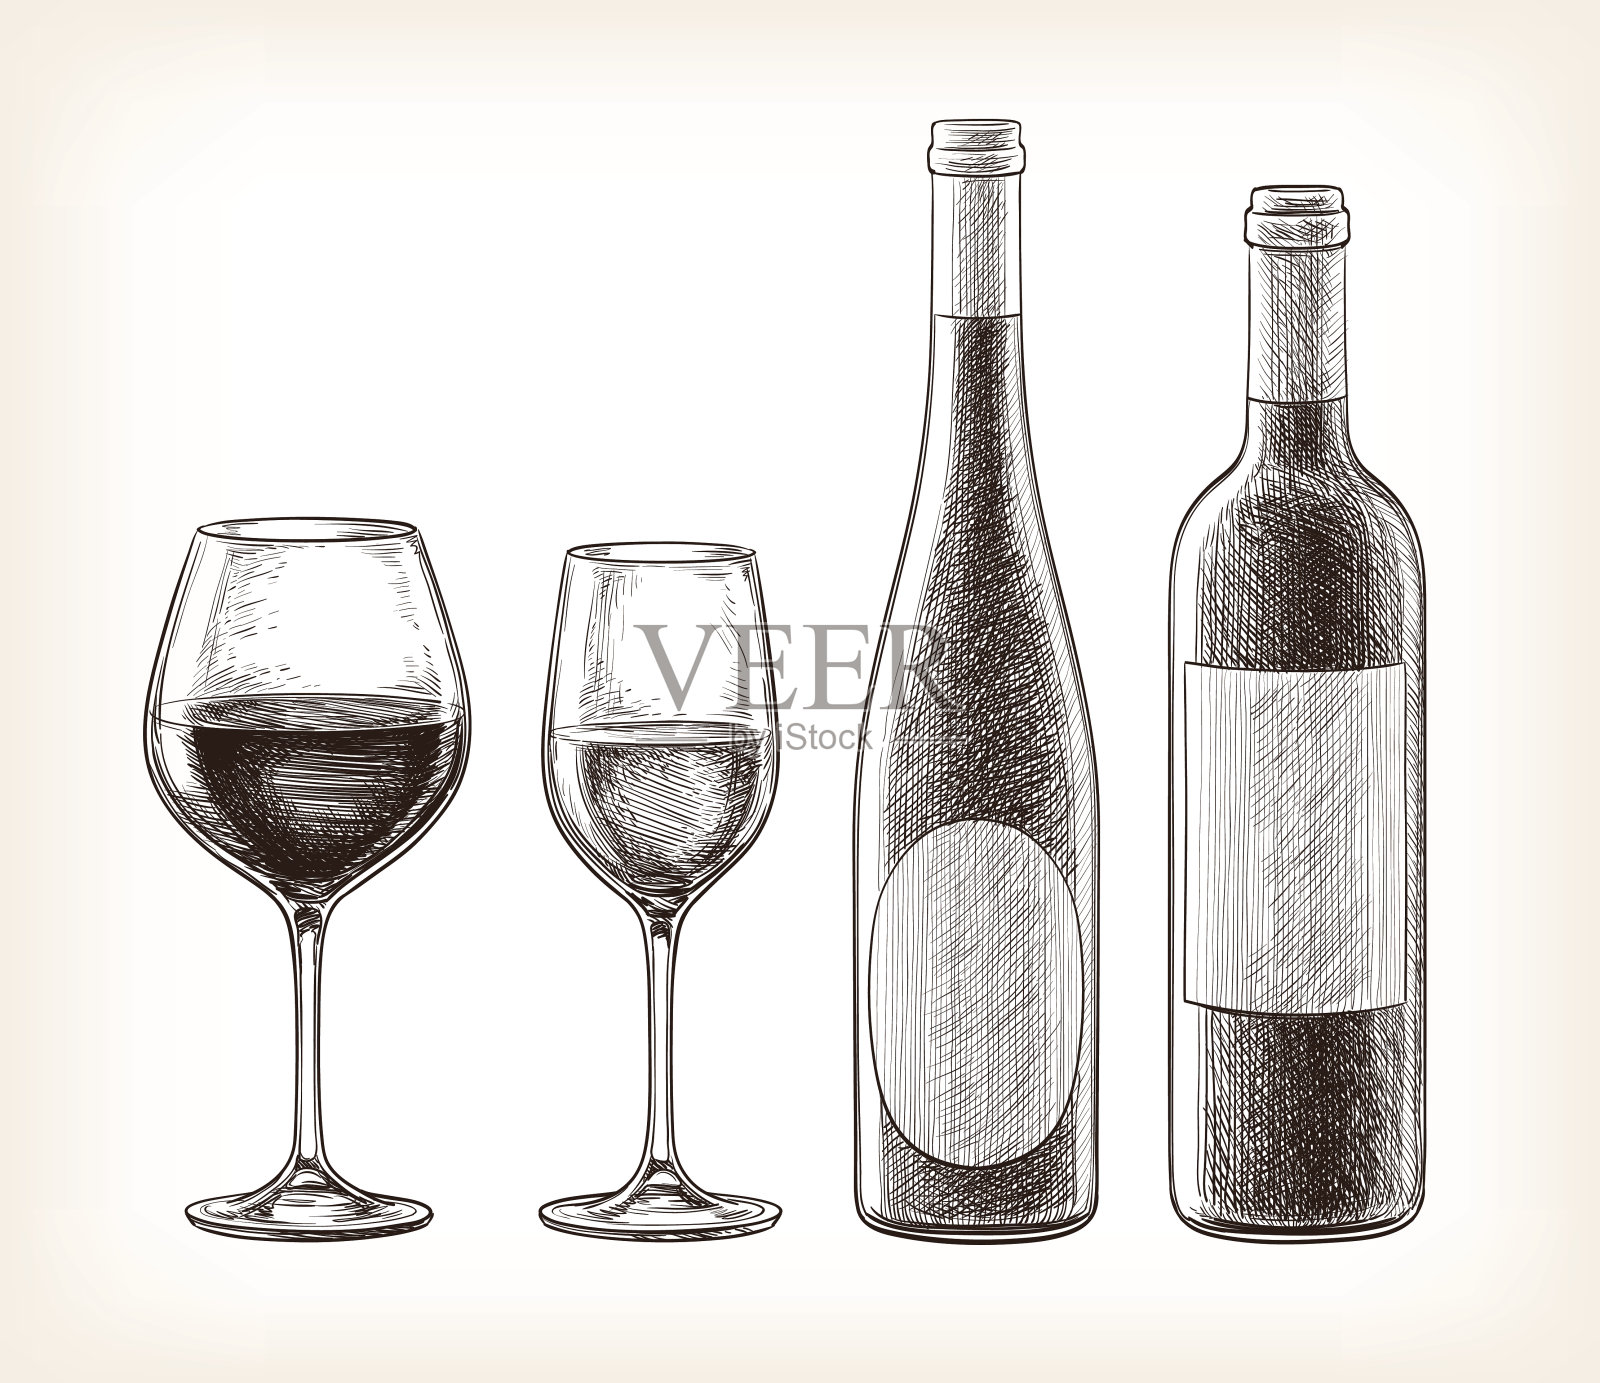 酒瓶和酒杯插画图片素材